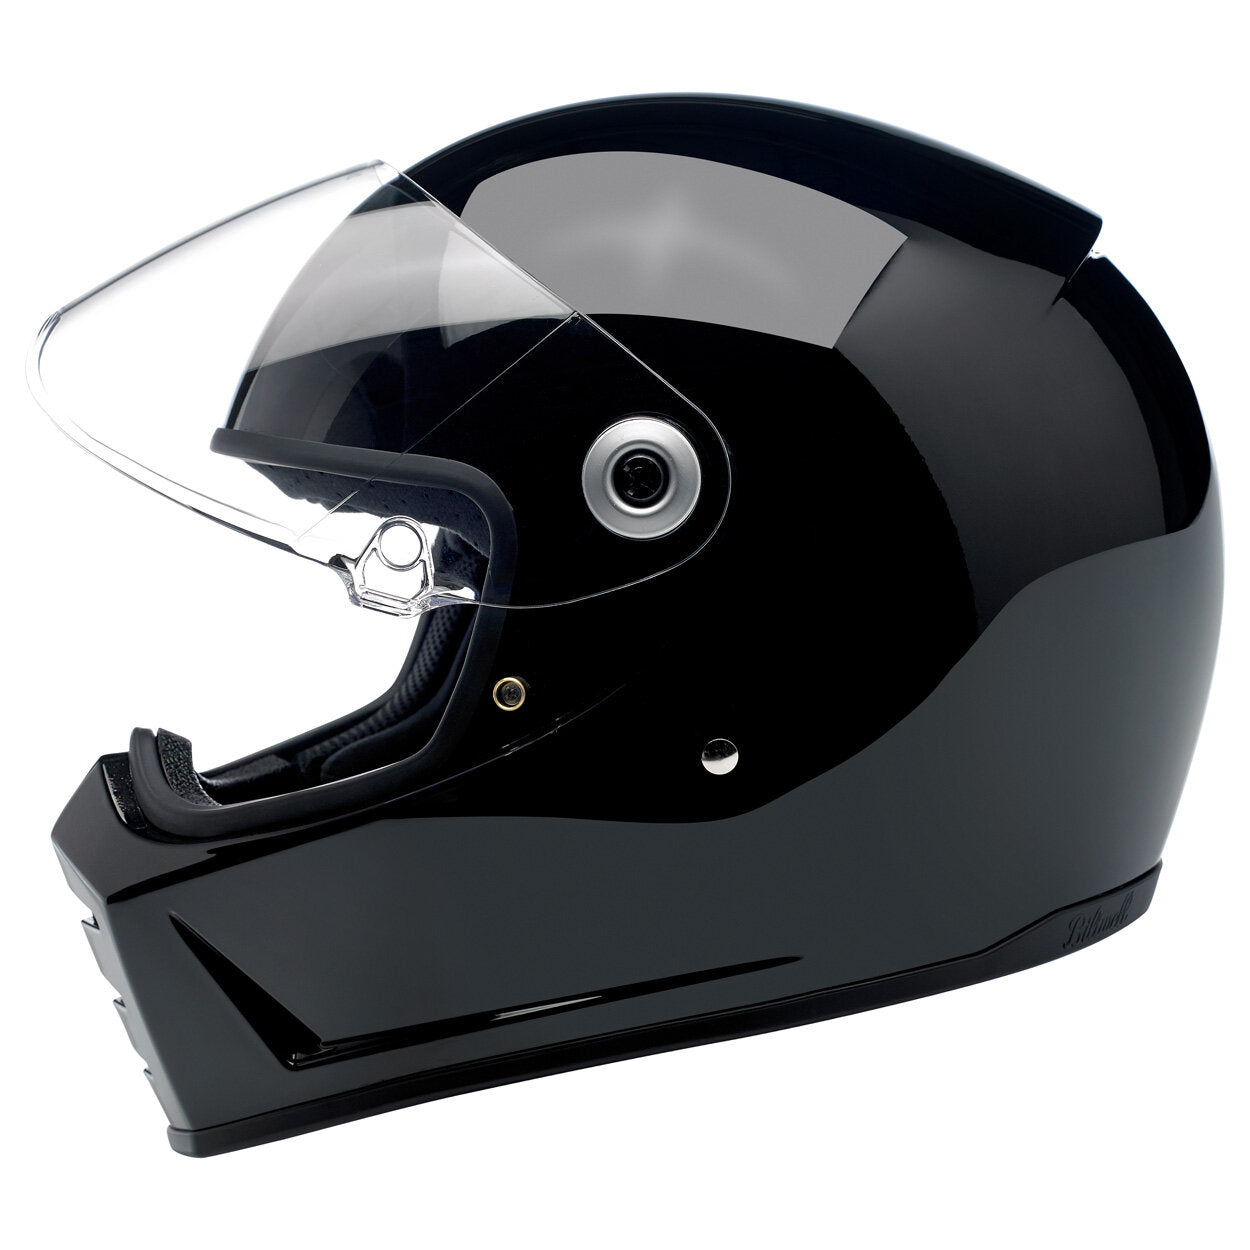 Biltwell Lane Splitter Helmet - Gloss Black